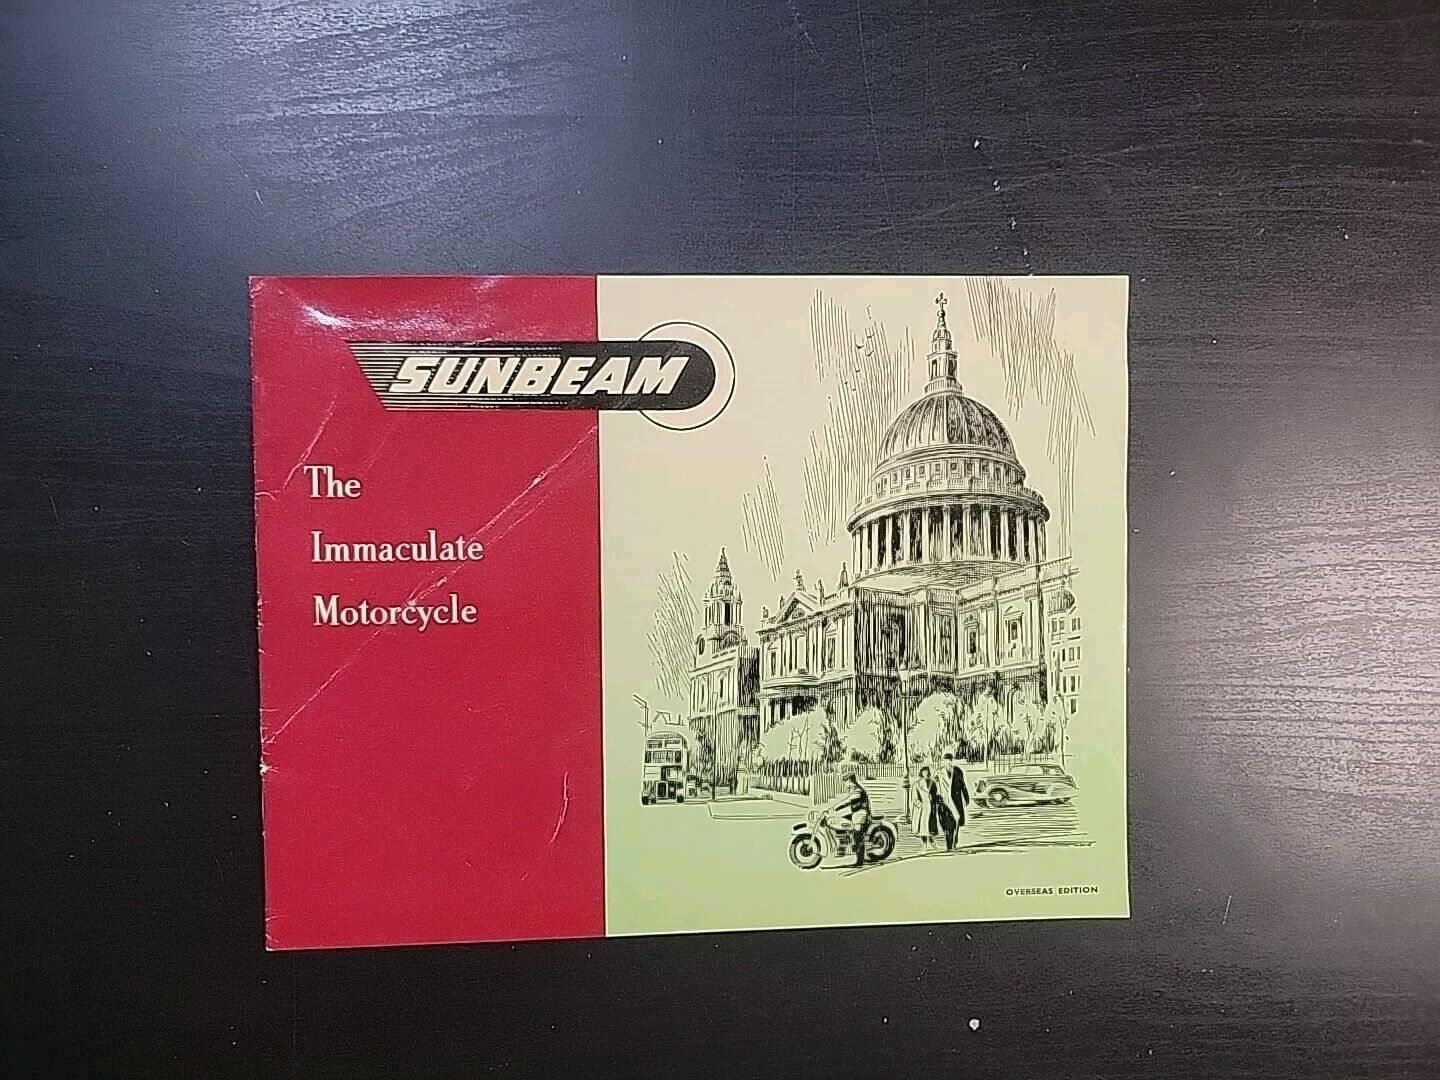 Vtg Original Dealership Brochure Sunbeam Immaculate Motorcycle 